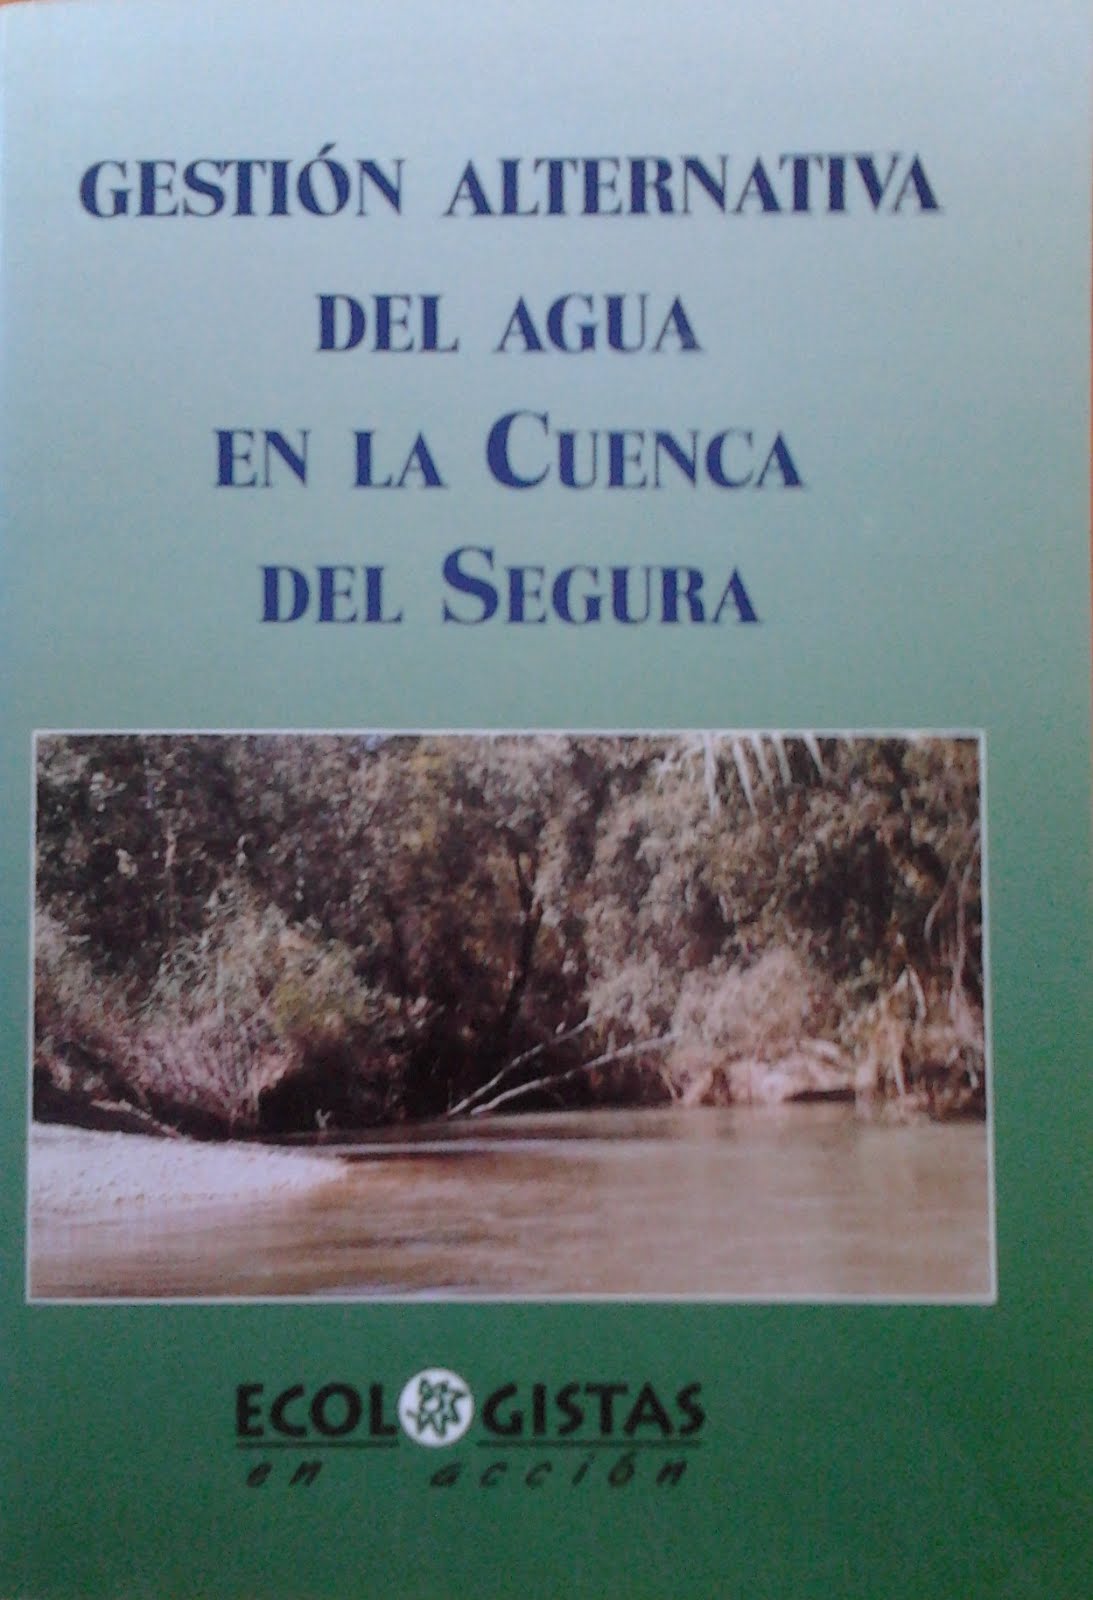 Documentos para una gestión alternativa del afua en la Cuenca del Segura.